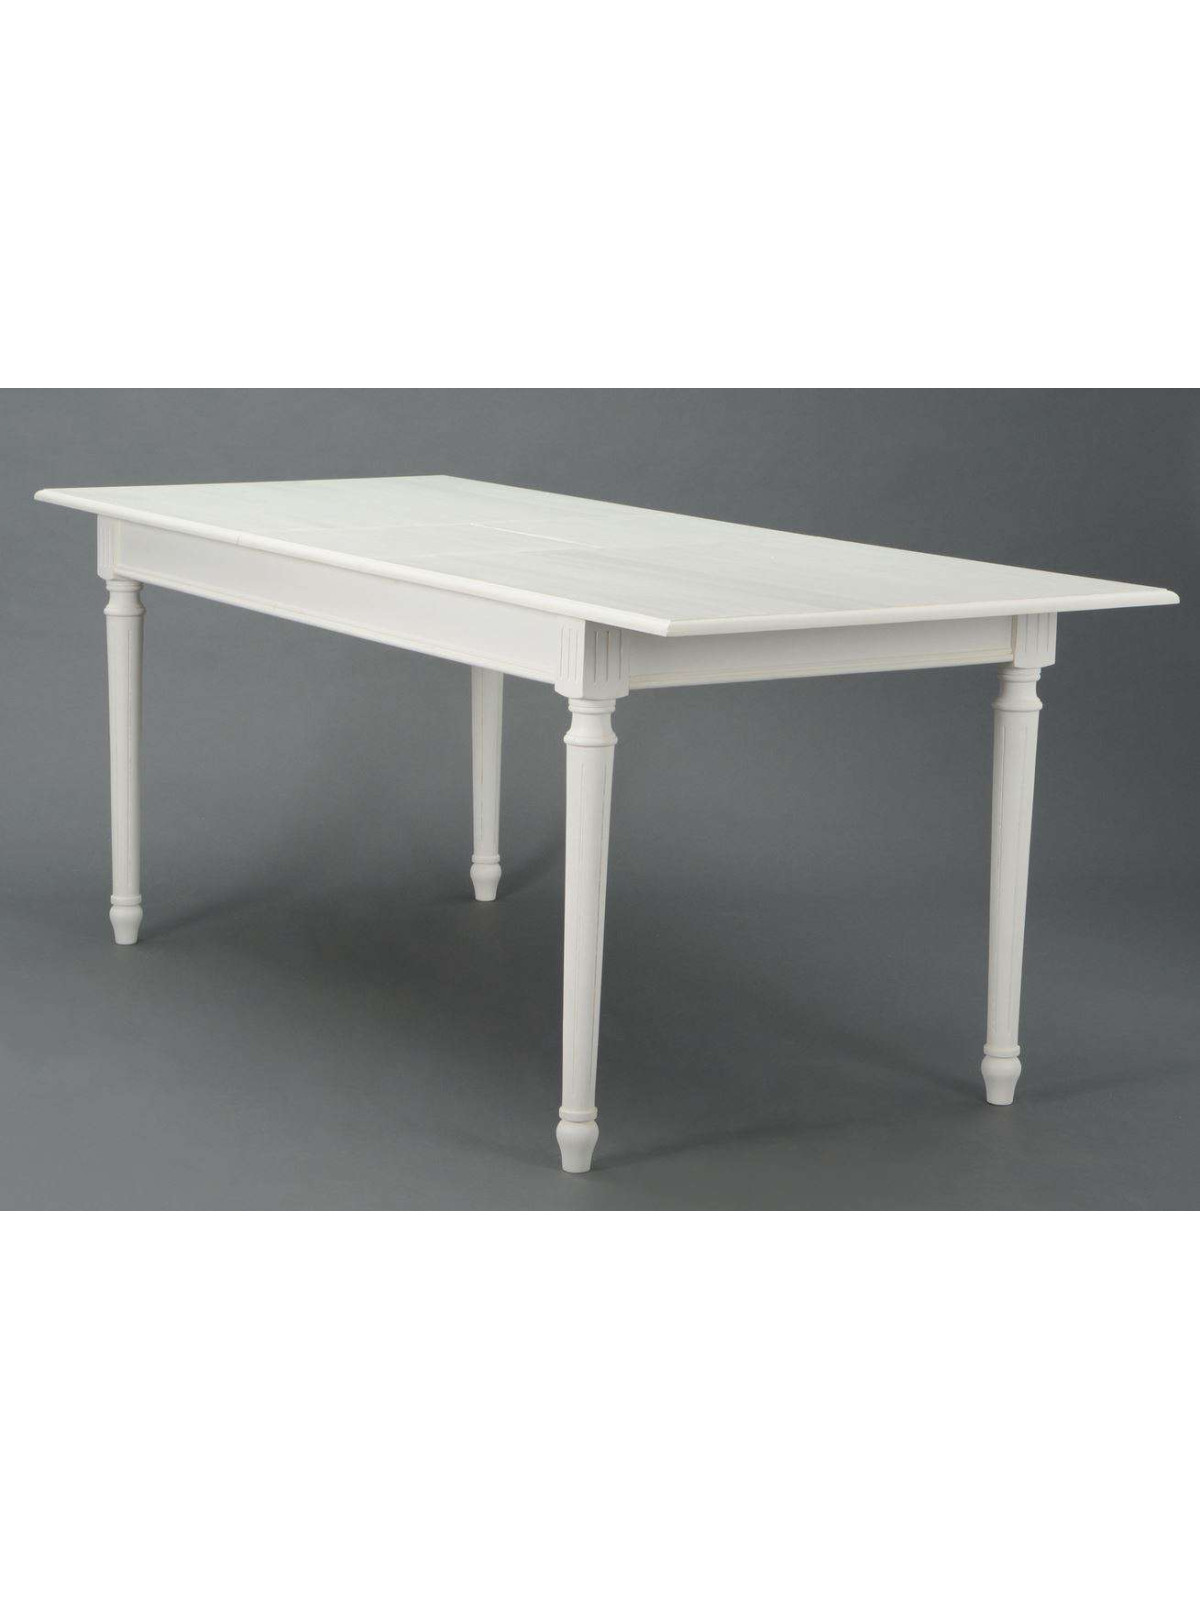 Grande table blanche chic 160 cm